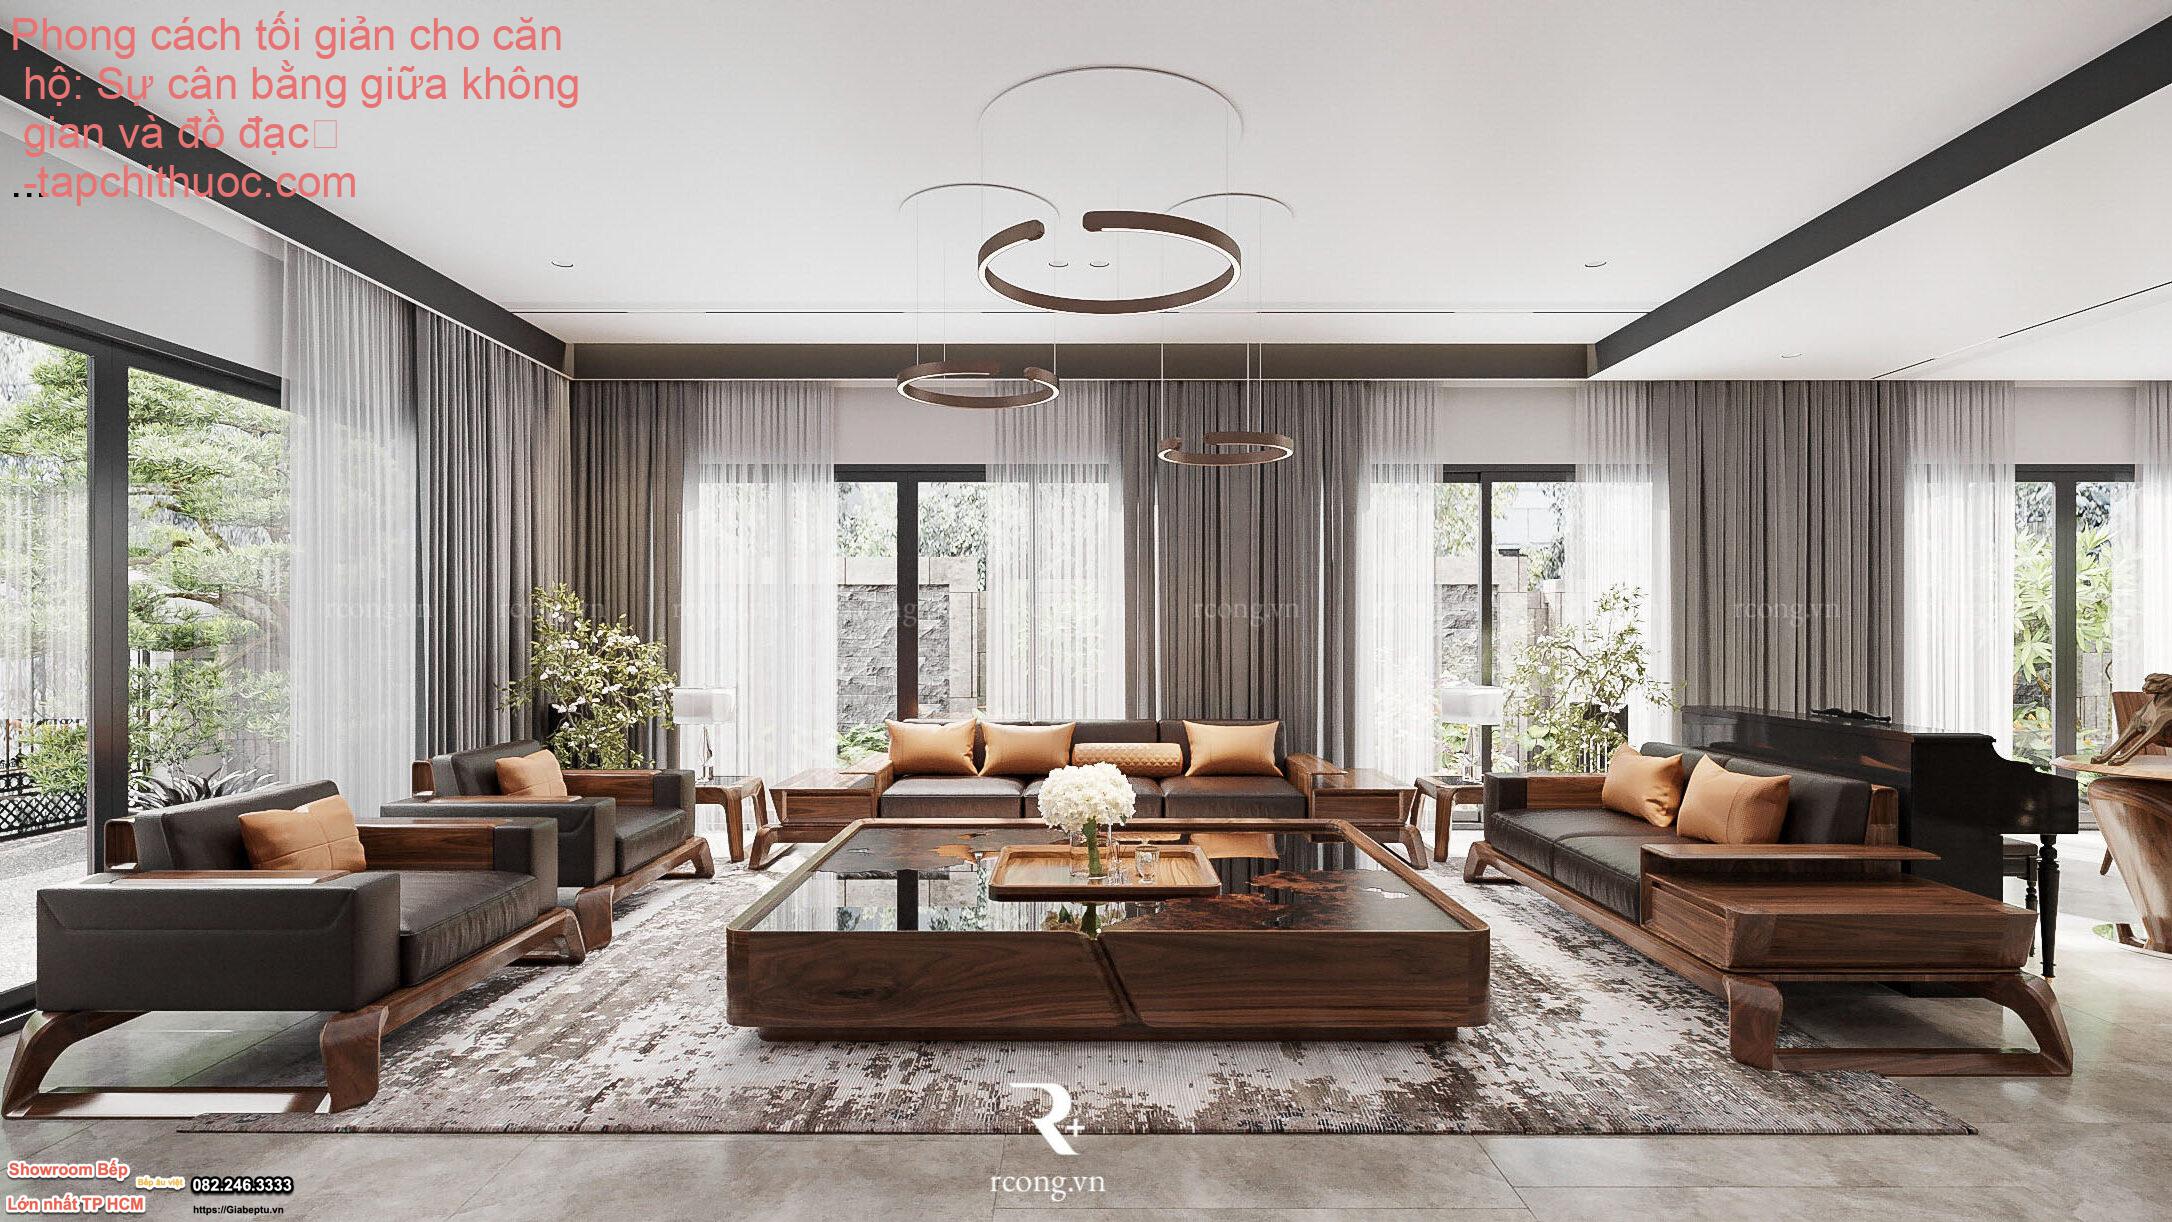 Phong cách tối giản cho căn hộ: Sự cân bằng giữa không gian và đồ đạc
